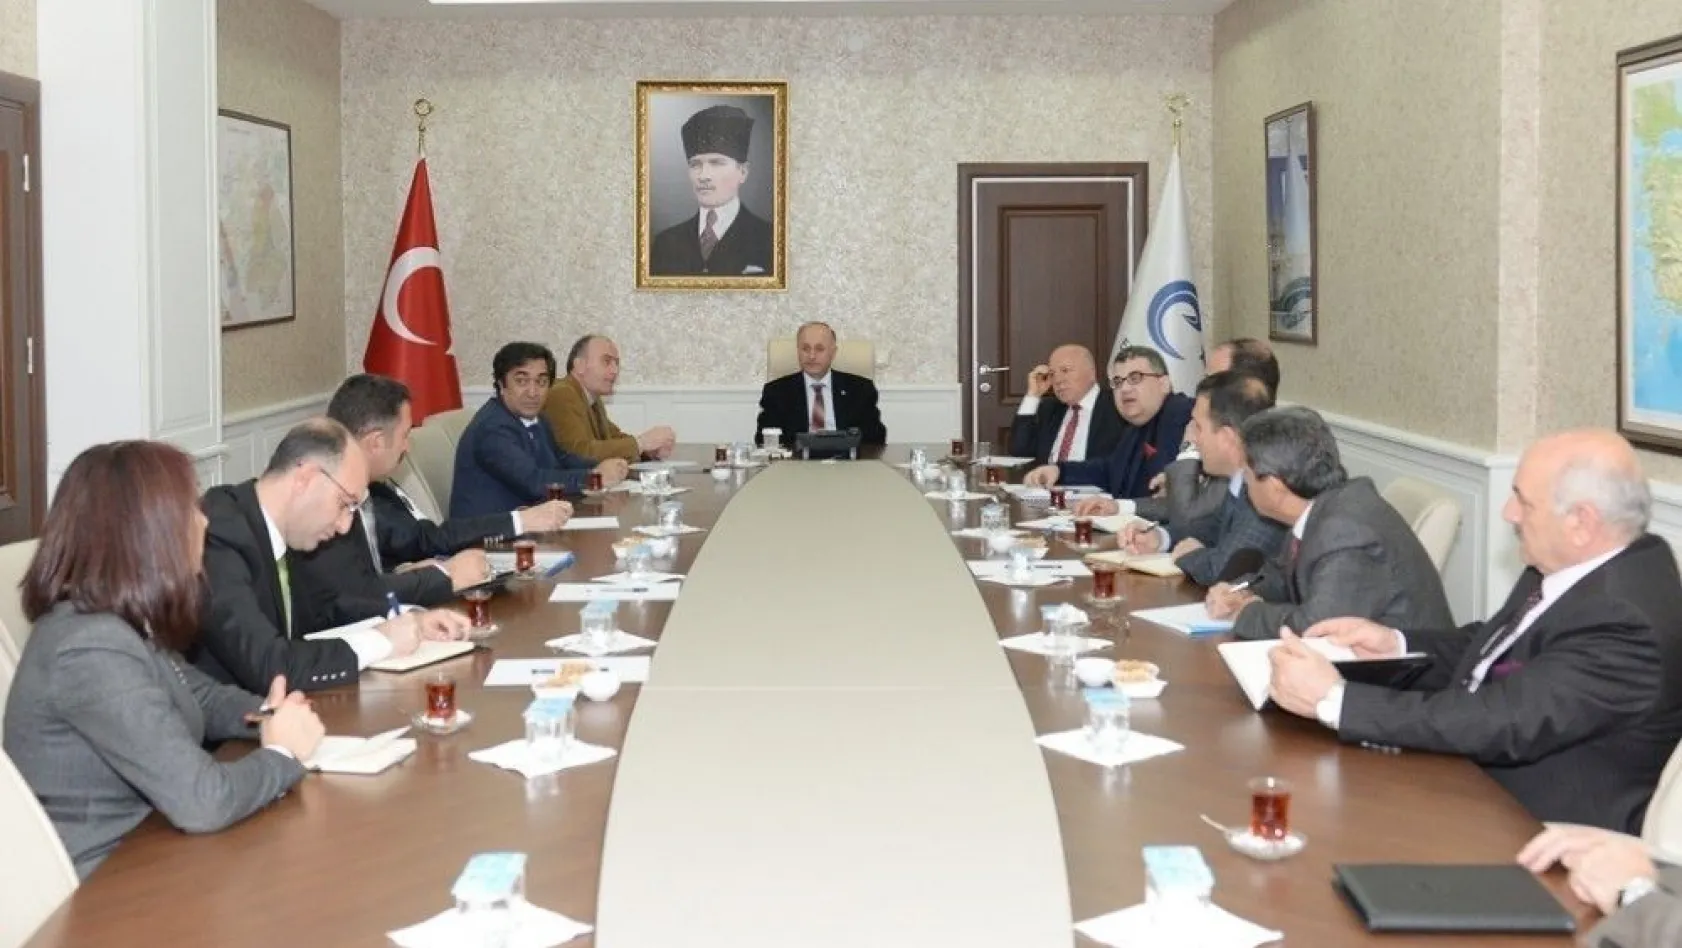 Türkiye-İran ekonomik ve kültürel ilişkilerinde Erzurum'un rolü masaya yatırıldı
